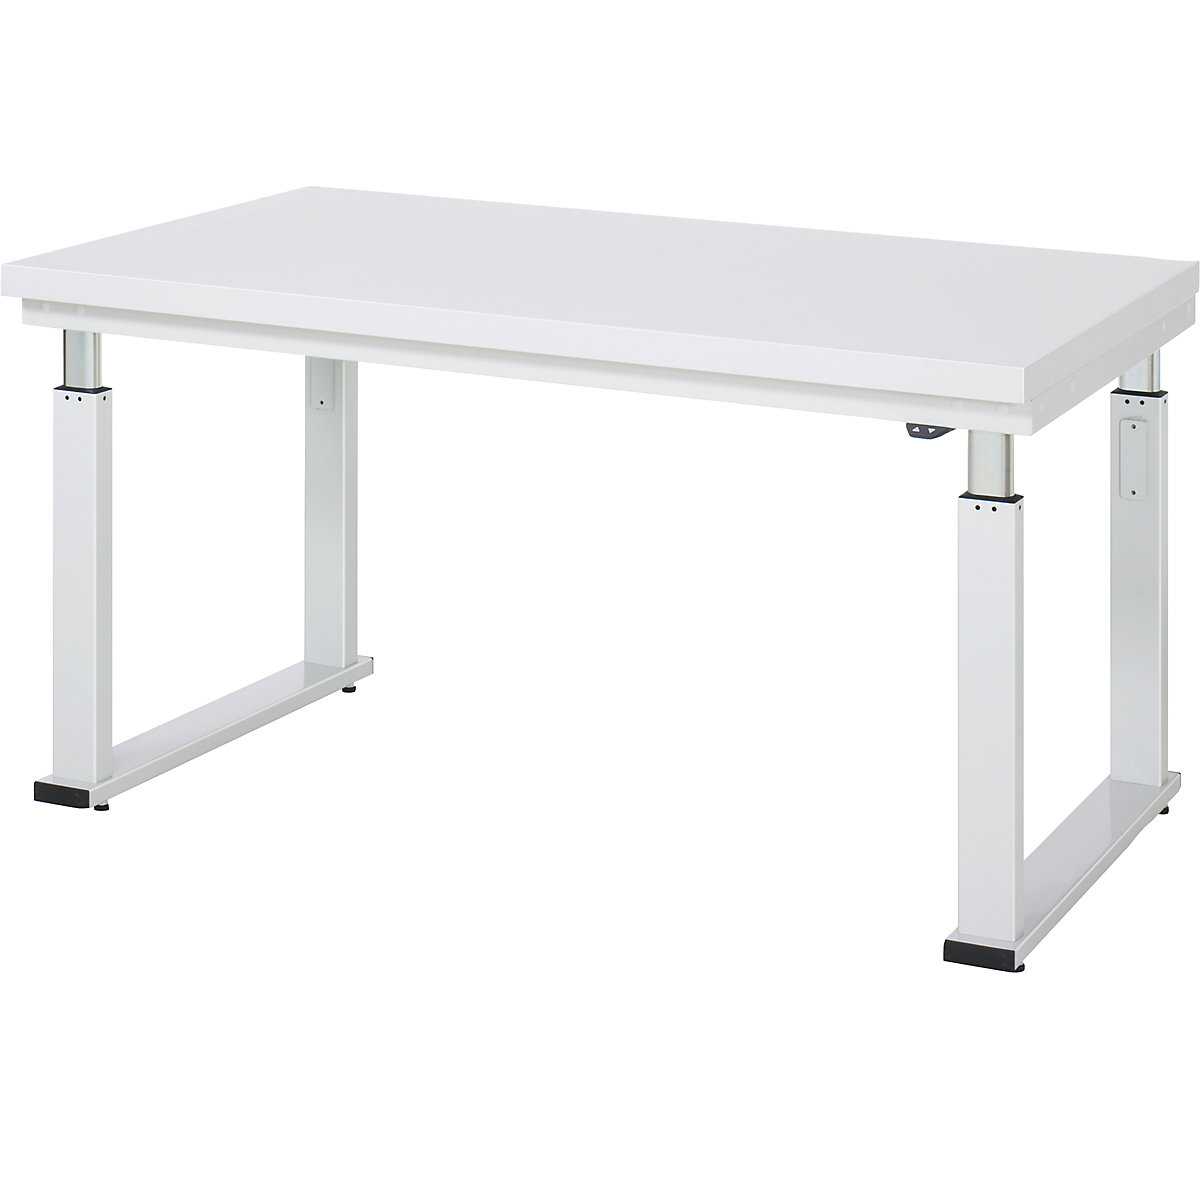 Psací stůl s elektrickým přestavováním výšky – RAU, deska z tvrdého laminátu, nosnost 600 kg, š x h 1500 x 900 mm-11